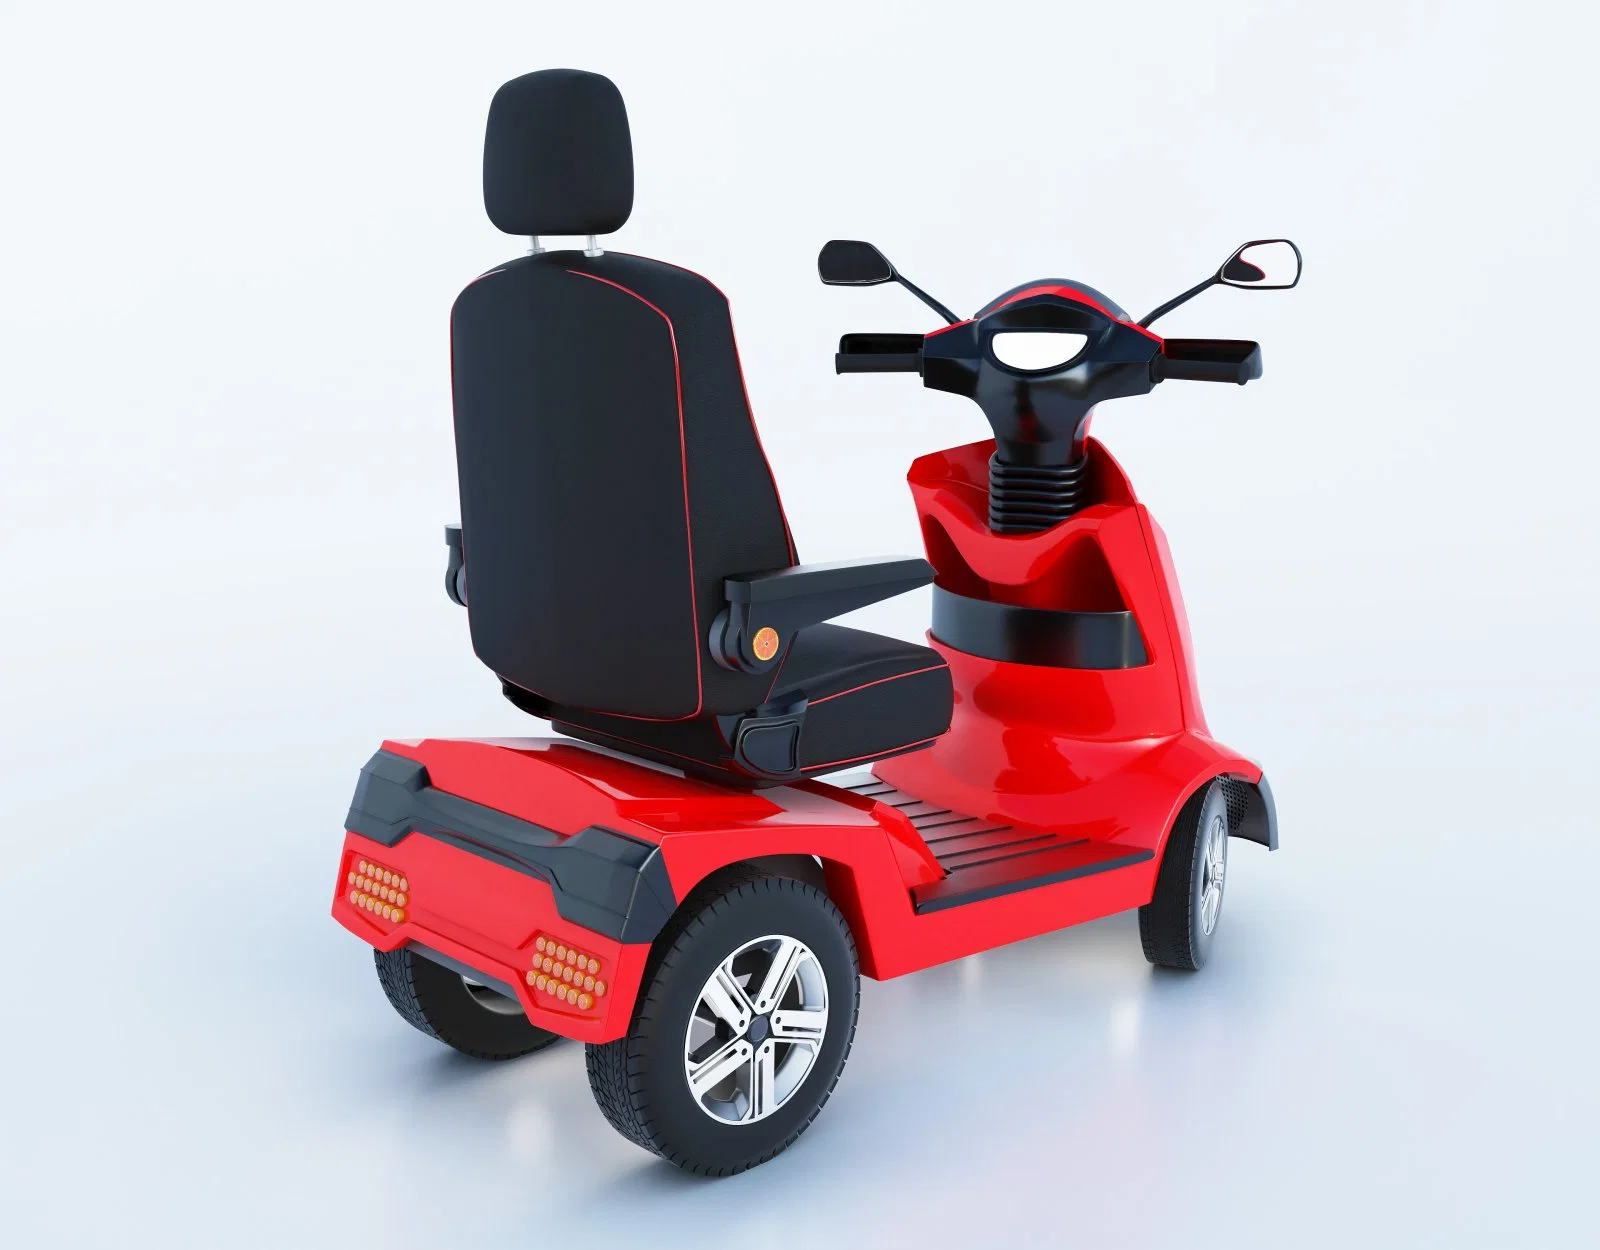 Cadeira da roda elétrica dobrada Silla de Ruedas cadeira da roda elétrica para motos Com EEC na scooter da China